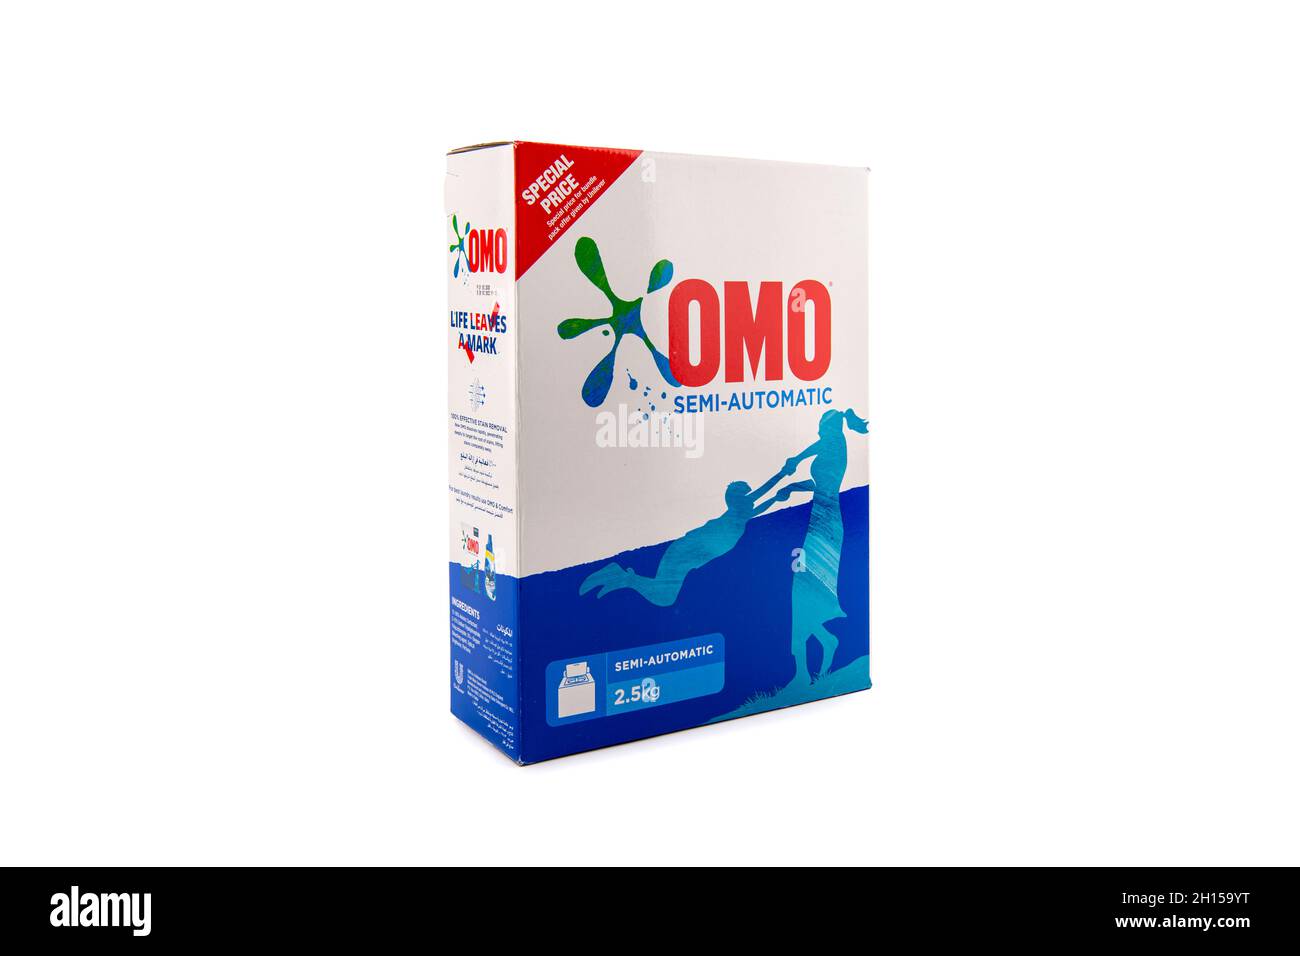 Omo Surf, Semi automatic Washing detergent on isolated background. Stock Photo